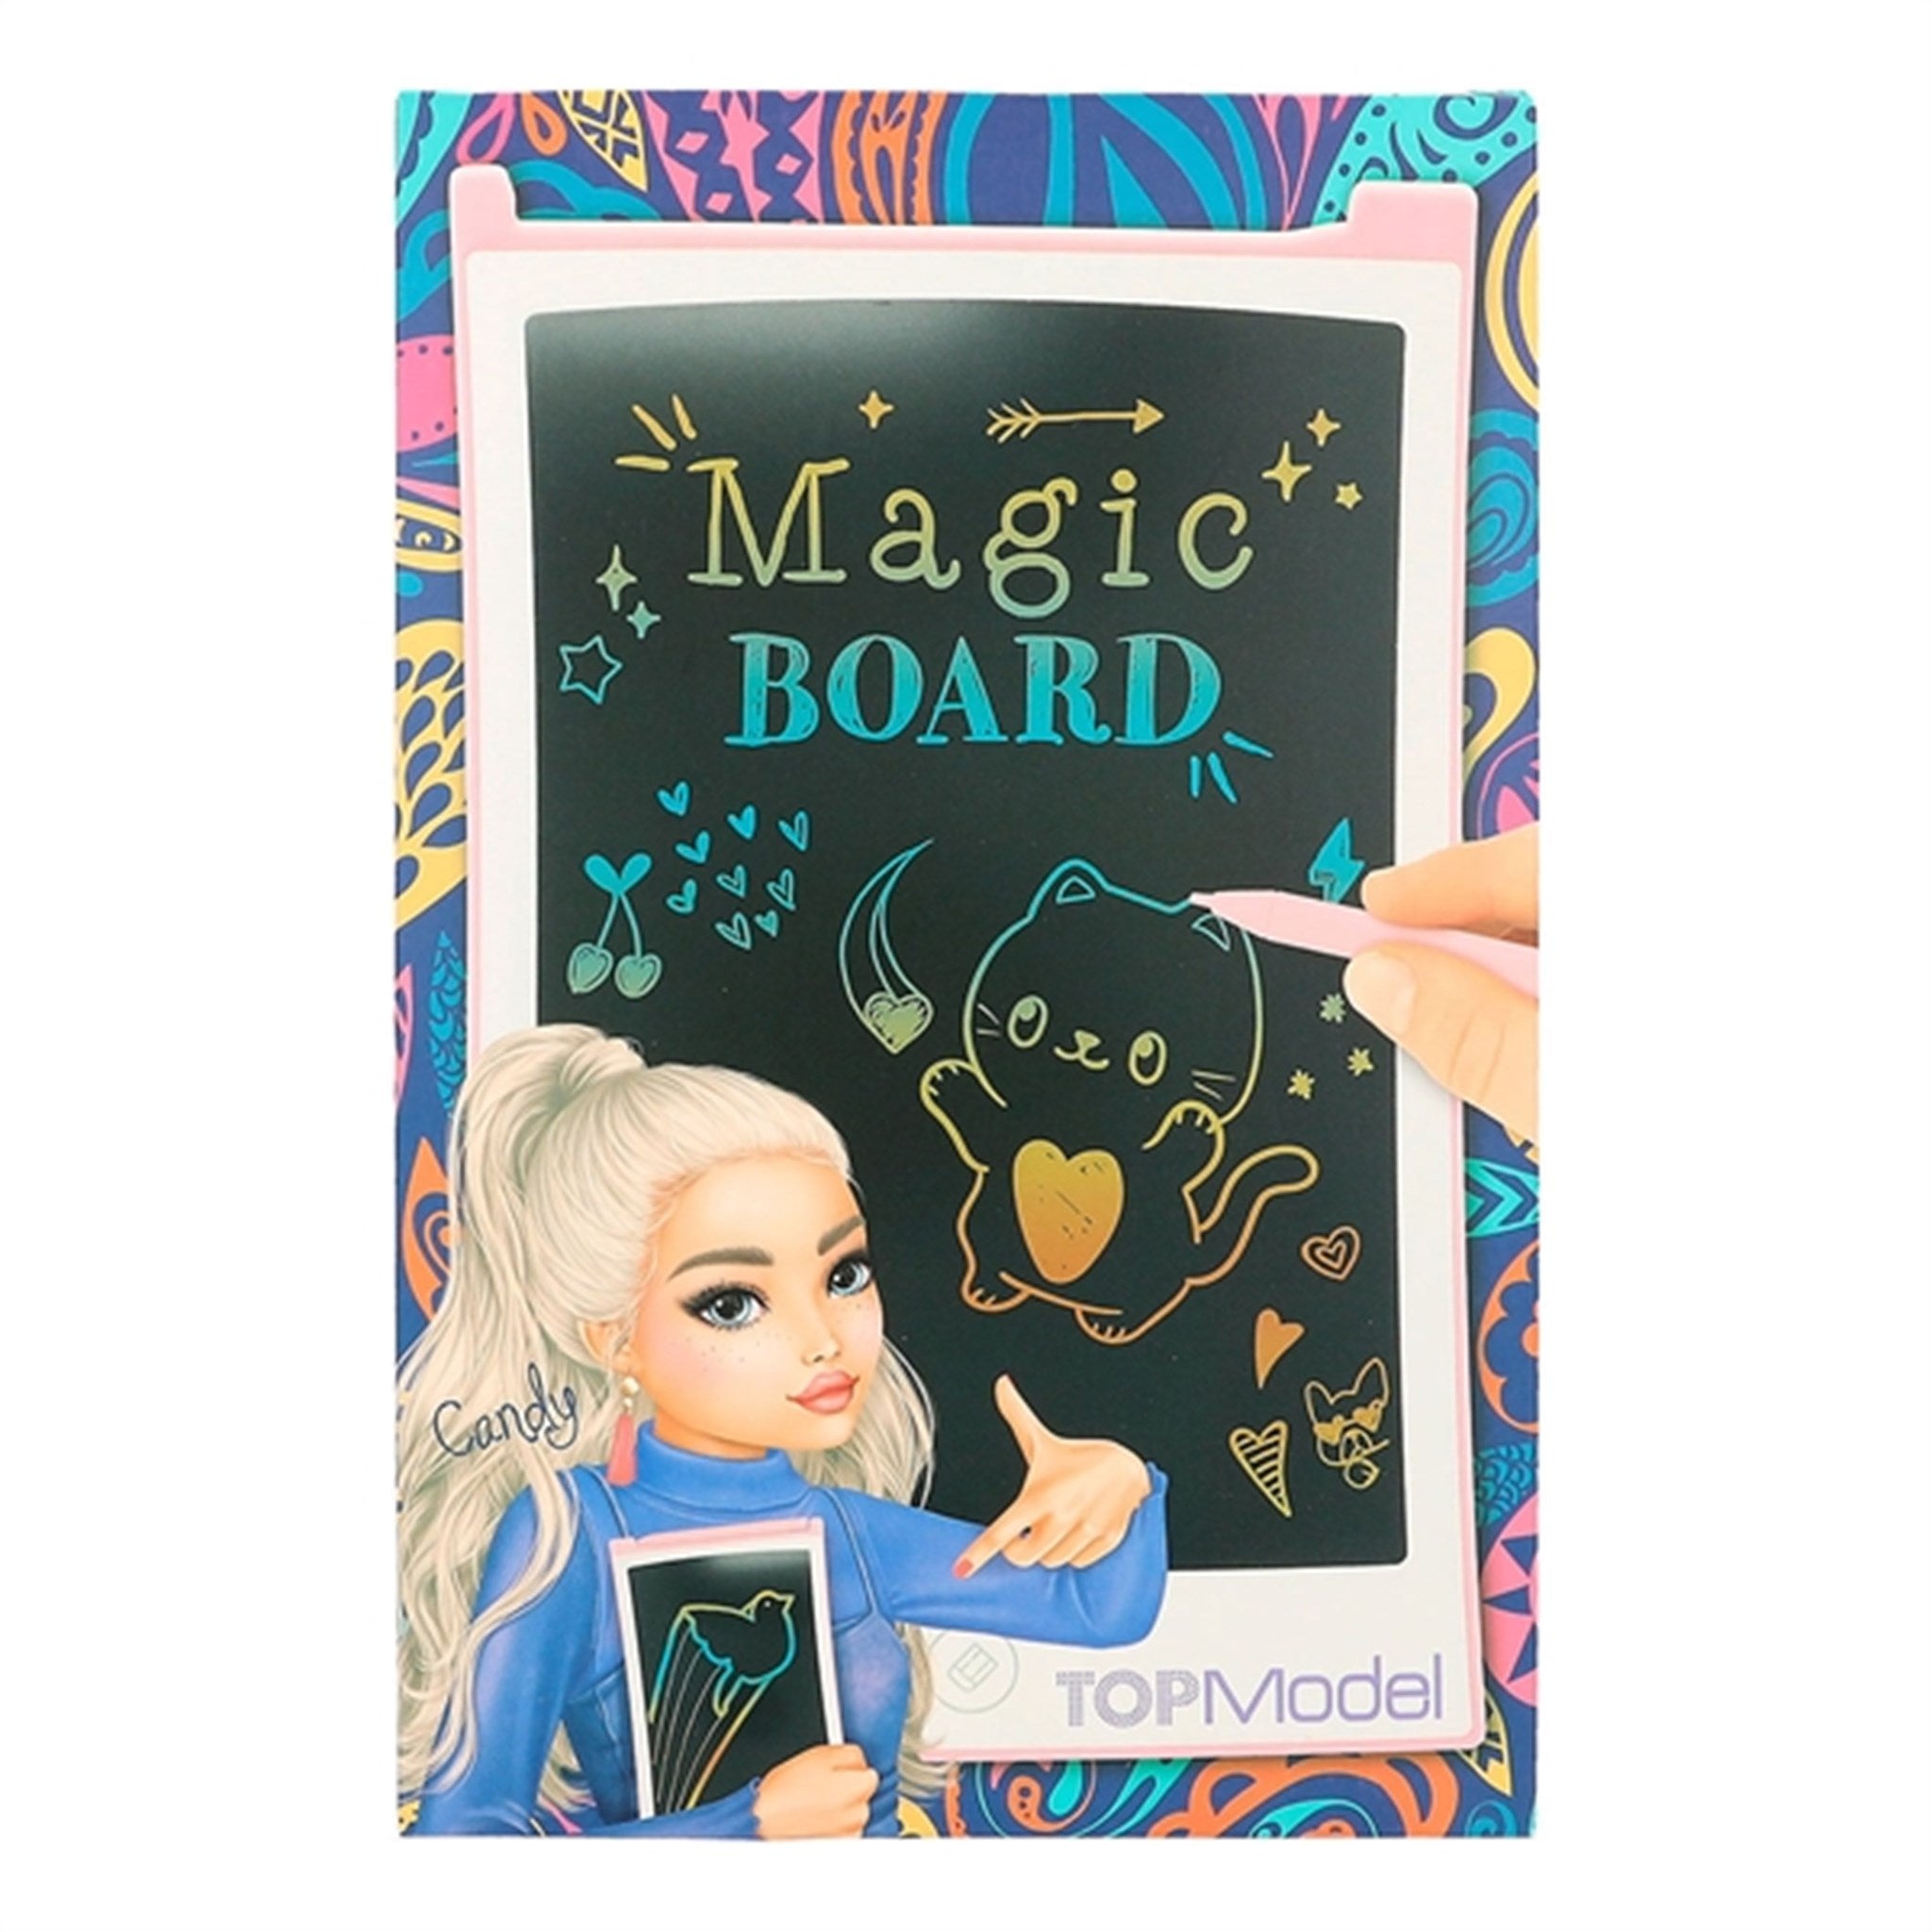 TOPModel Magical Board 2